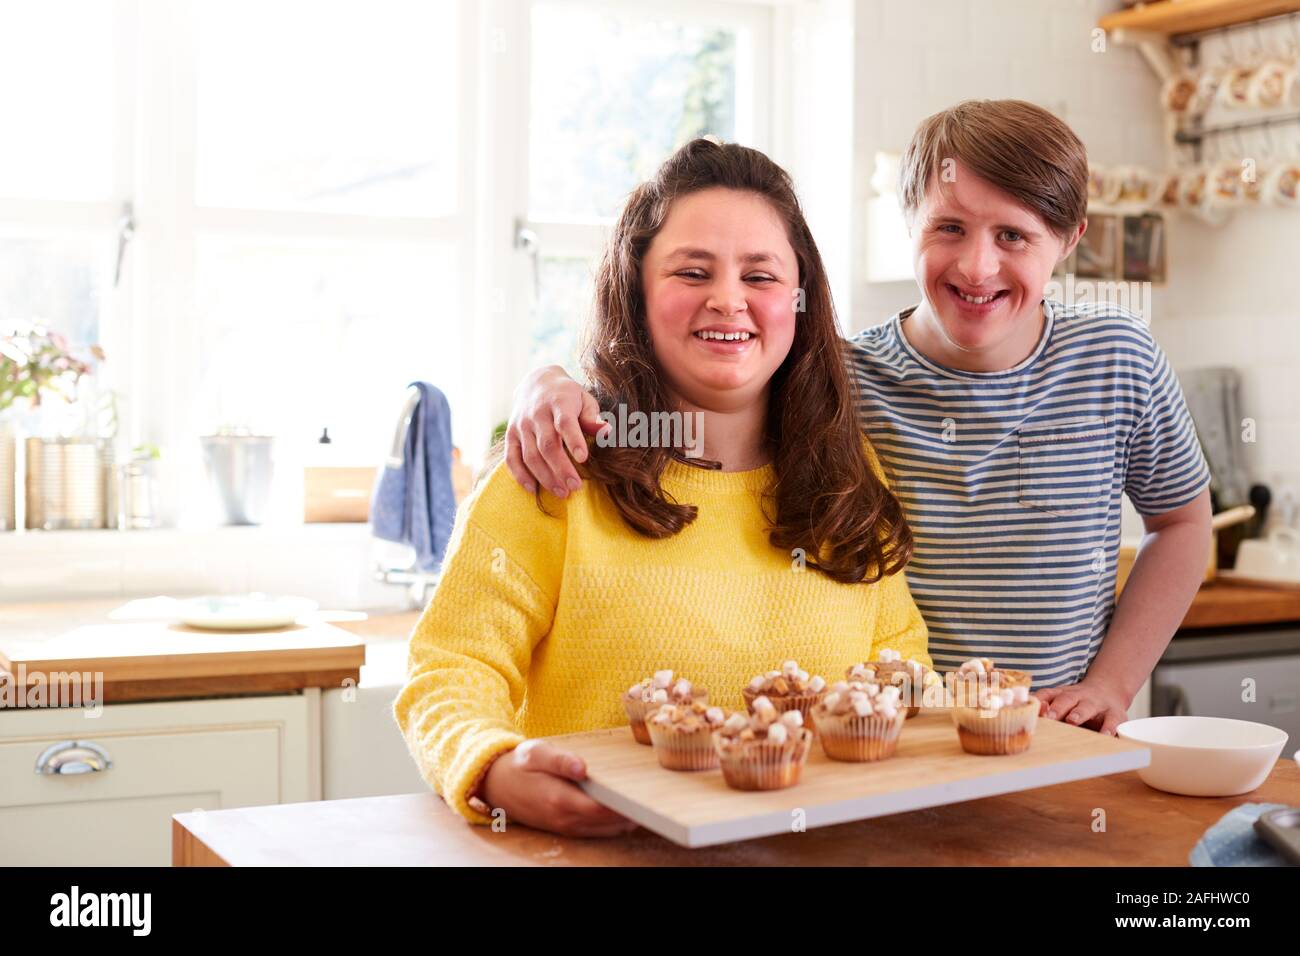 Ritratto di sindrome di Downs giovane decorazione tortini fatti in casa con Marshmallows in cucina a casa Foto Stock